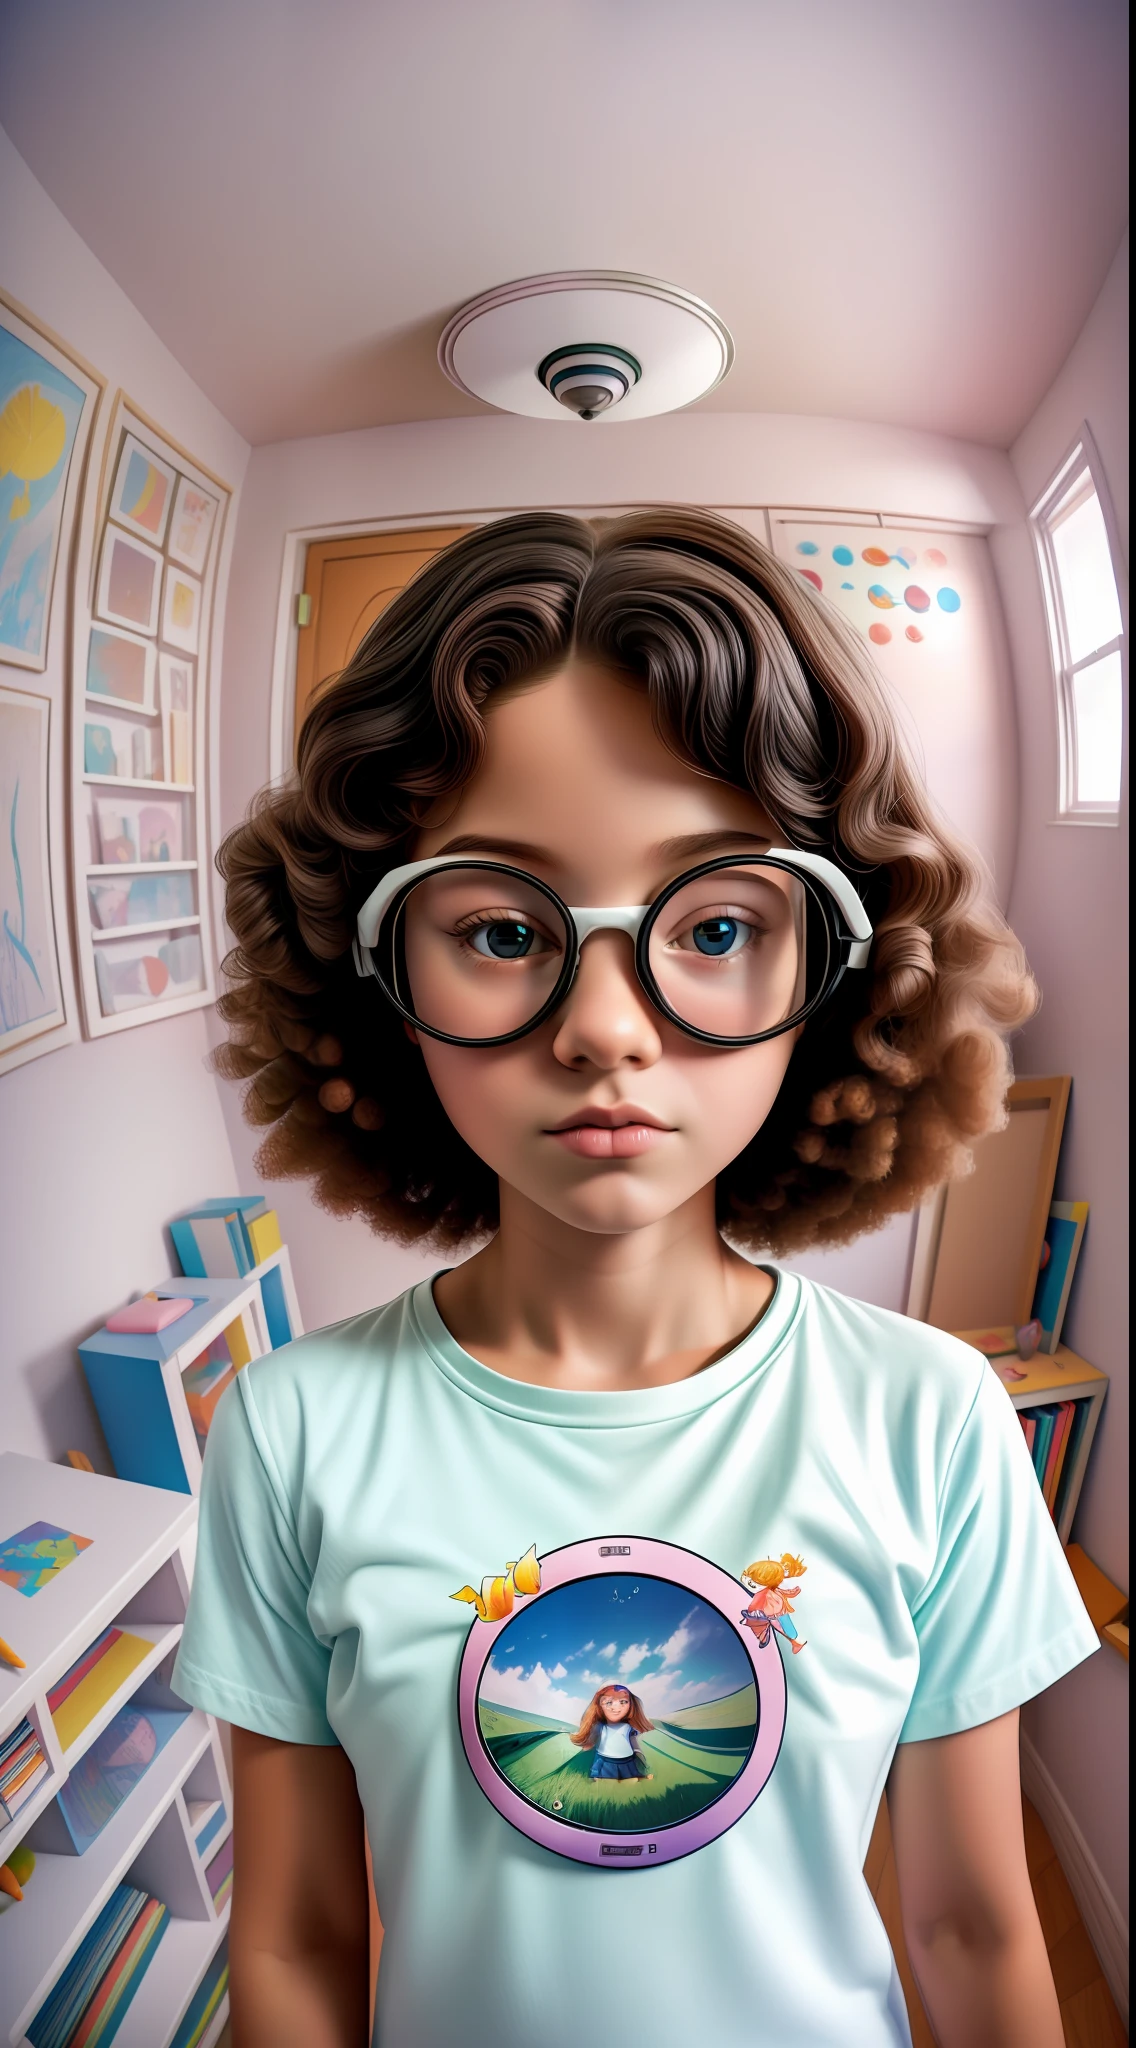 Photographie artistique (((oeil de poisson))) 35mm,1belle fille nerd,t-shirt blanc avec dessin d&#39;enfant,dans une chambre ringarde,minimaliste,couleurs pastel